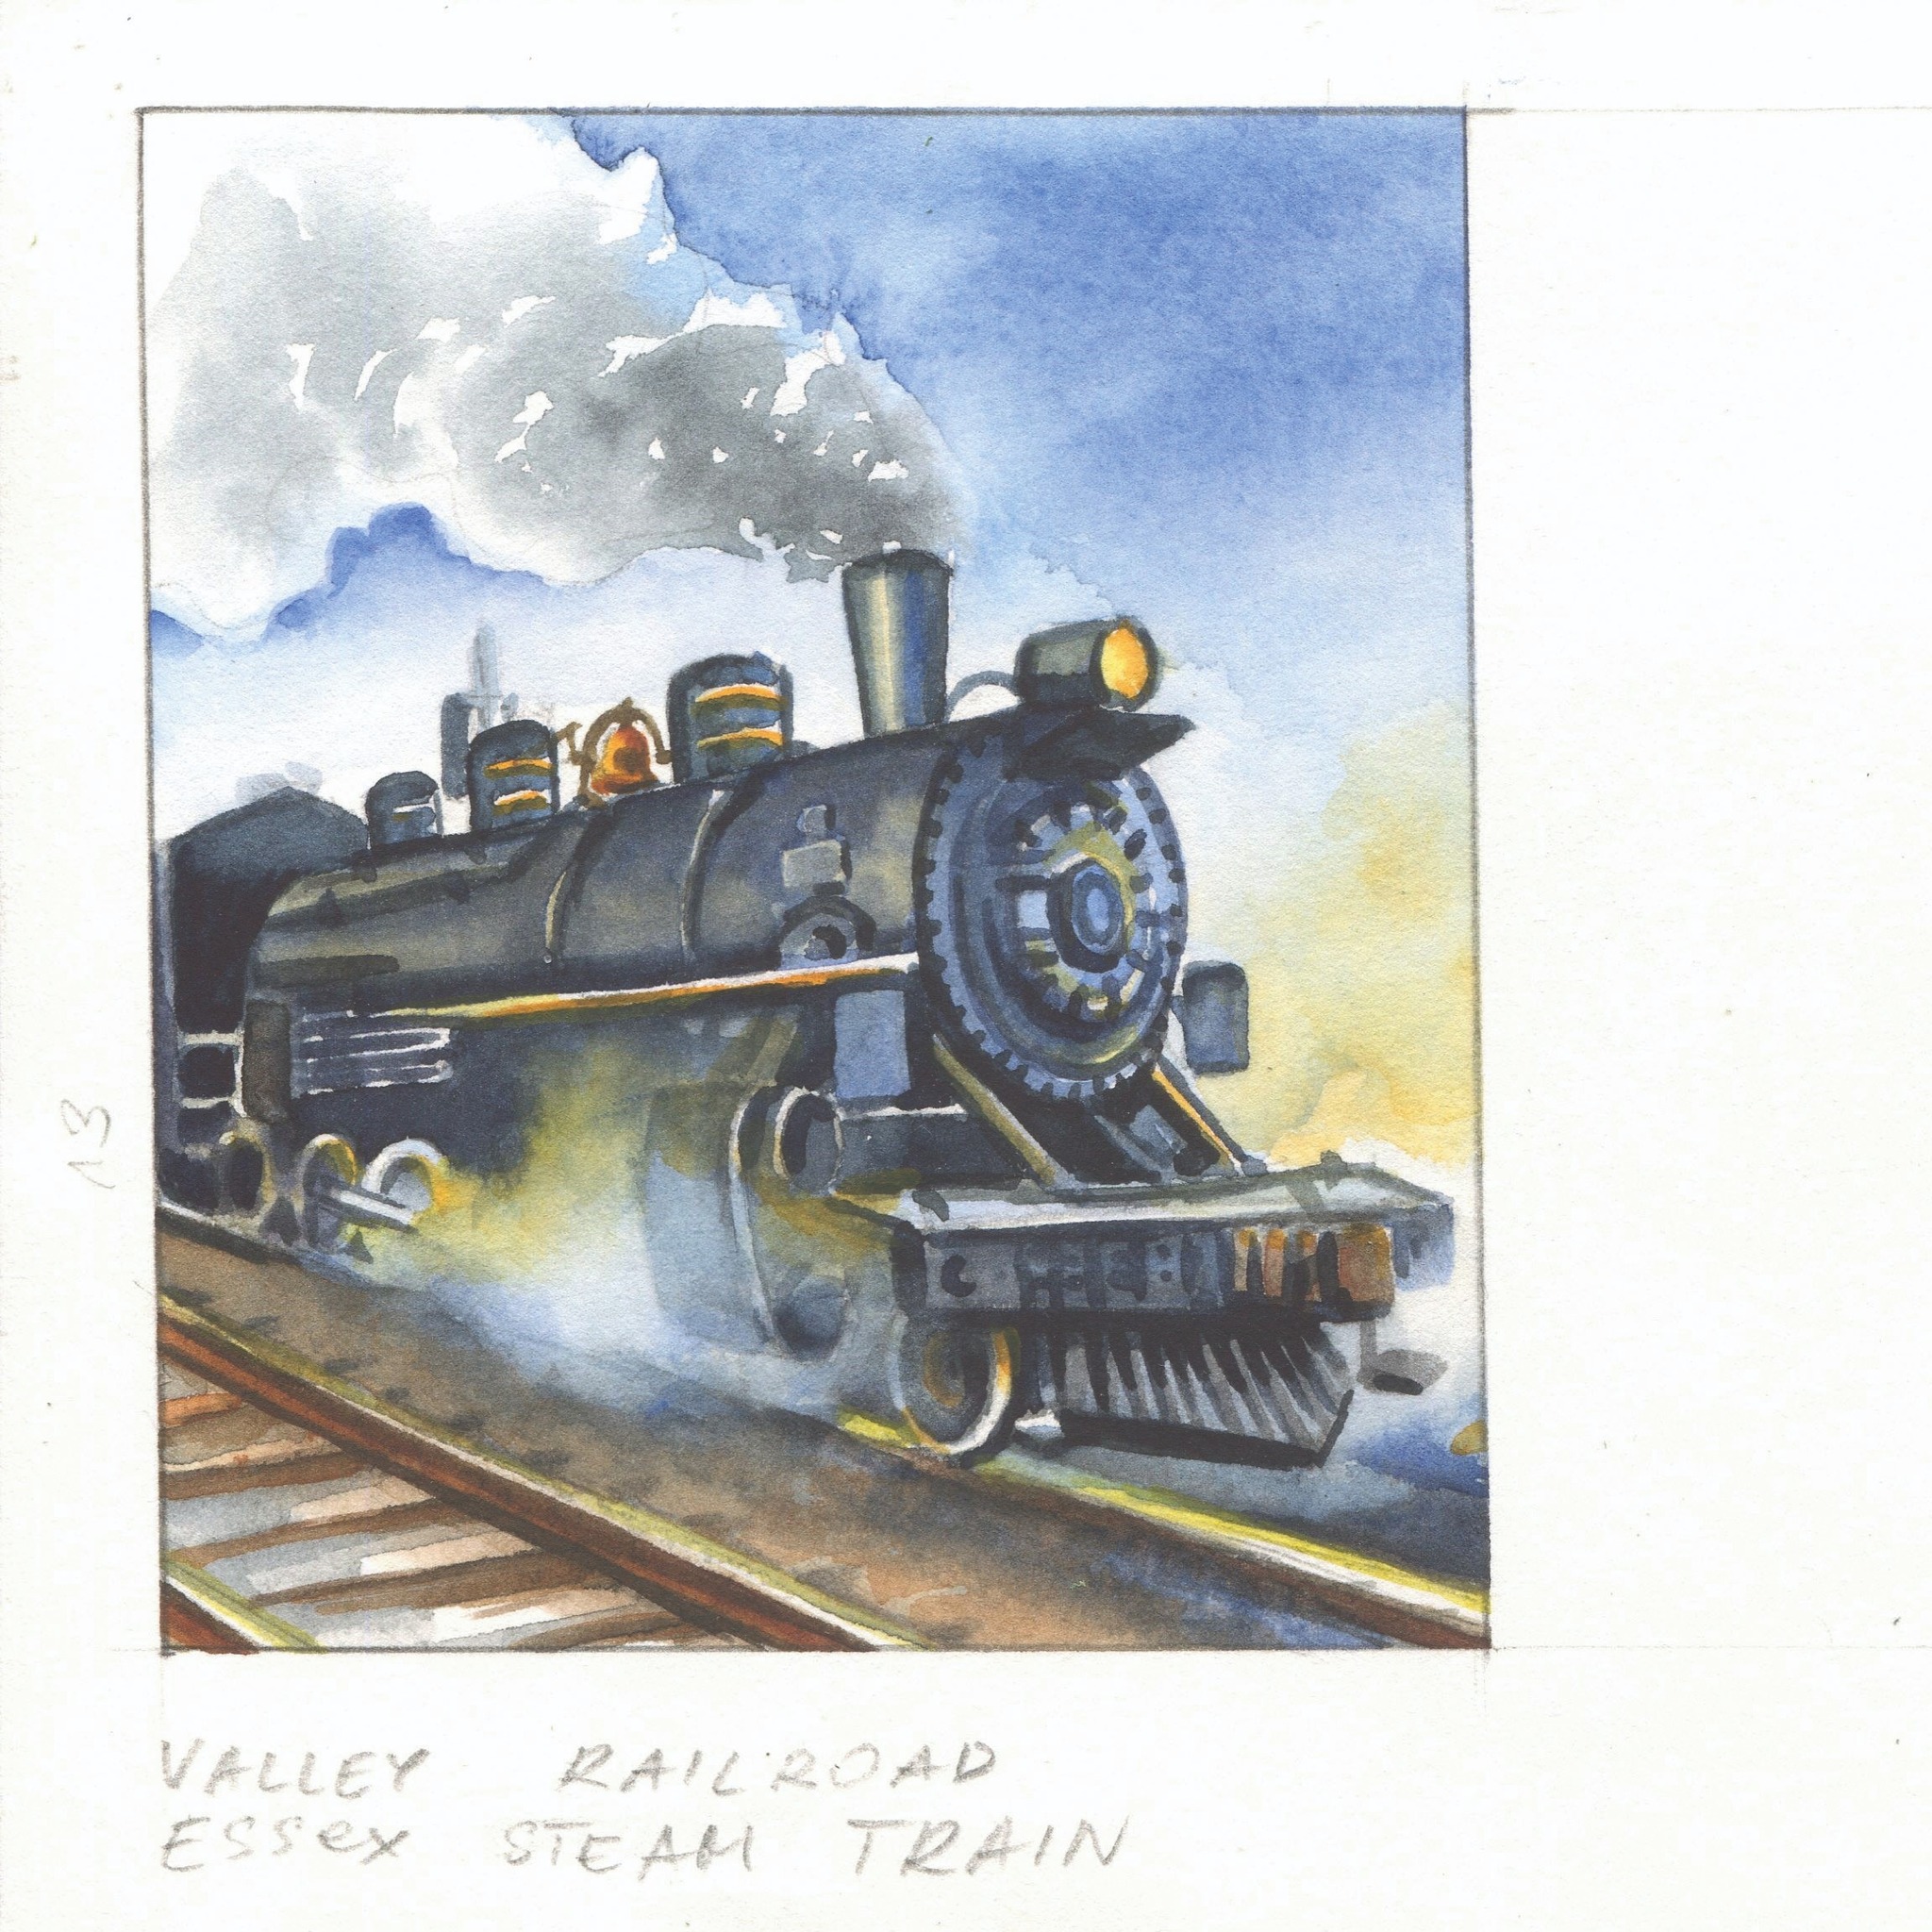 Essex Steam Train - Village Rails